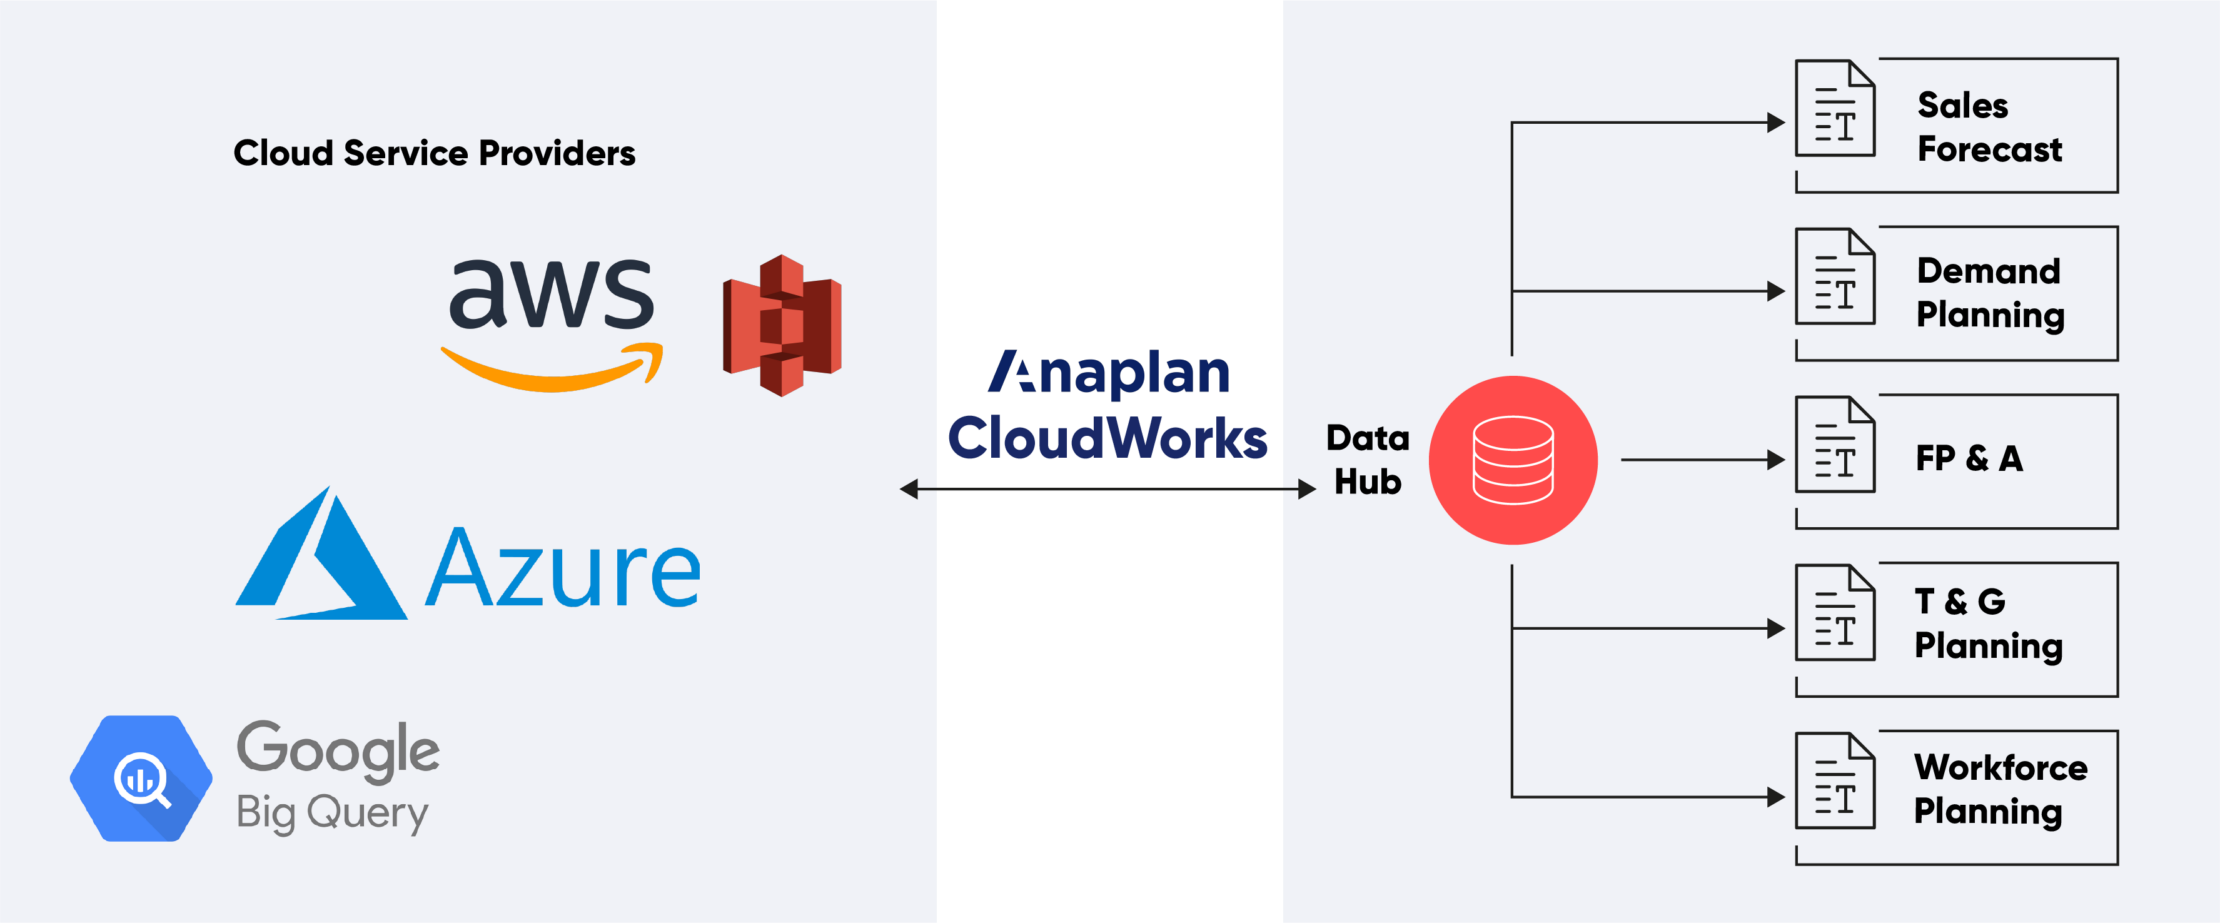 Anaplan CloudWorks - Anaplan-Integration